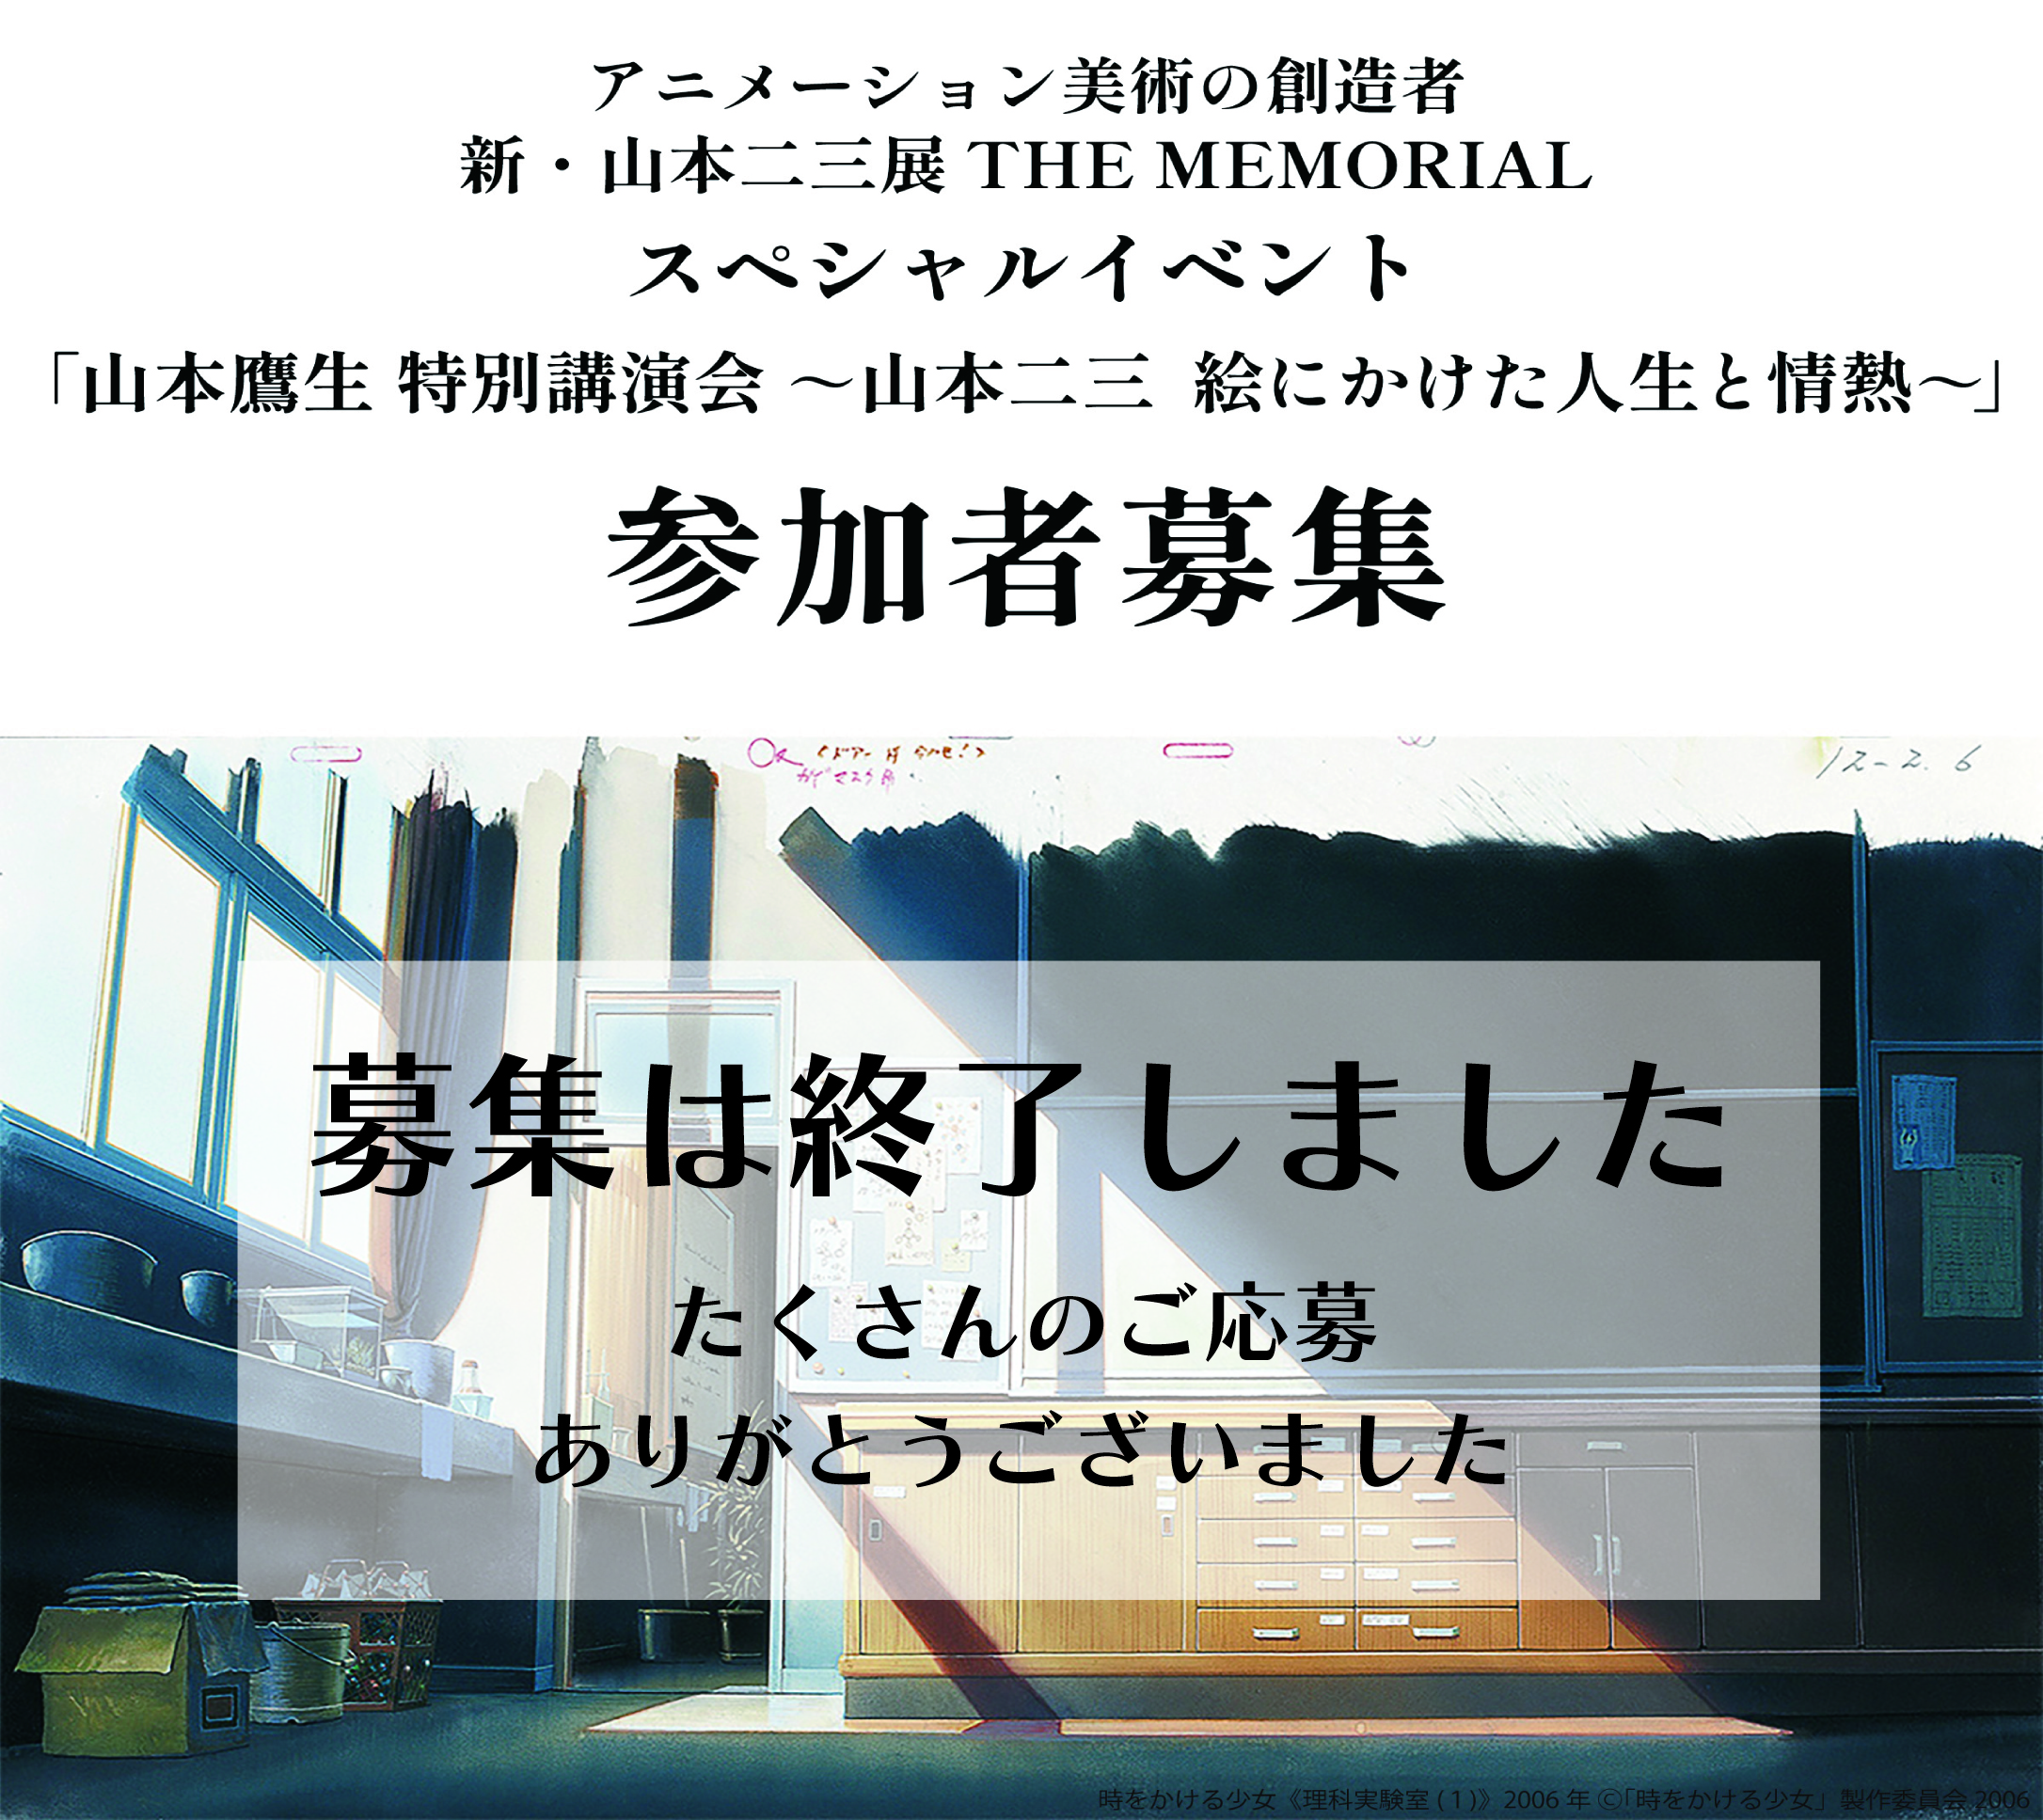 4月13日(土)山本鷹生 特別講演会『山本二三　絵にかけた人生と情熱』の募集は締め切りました。